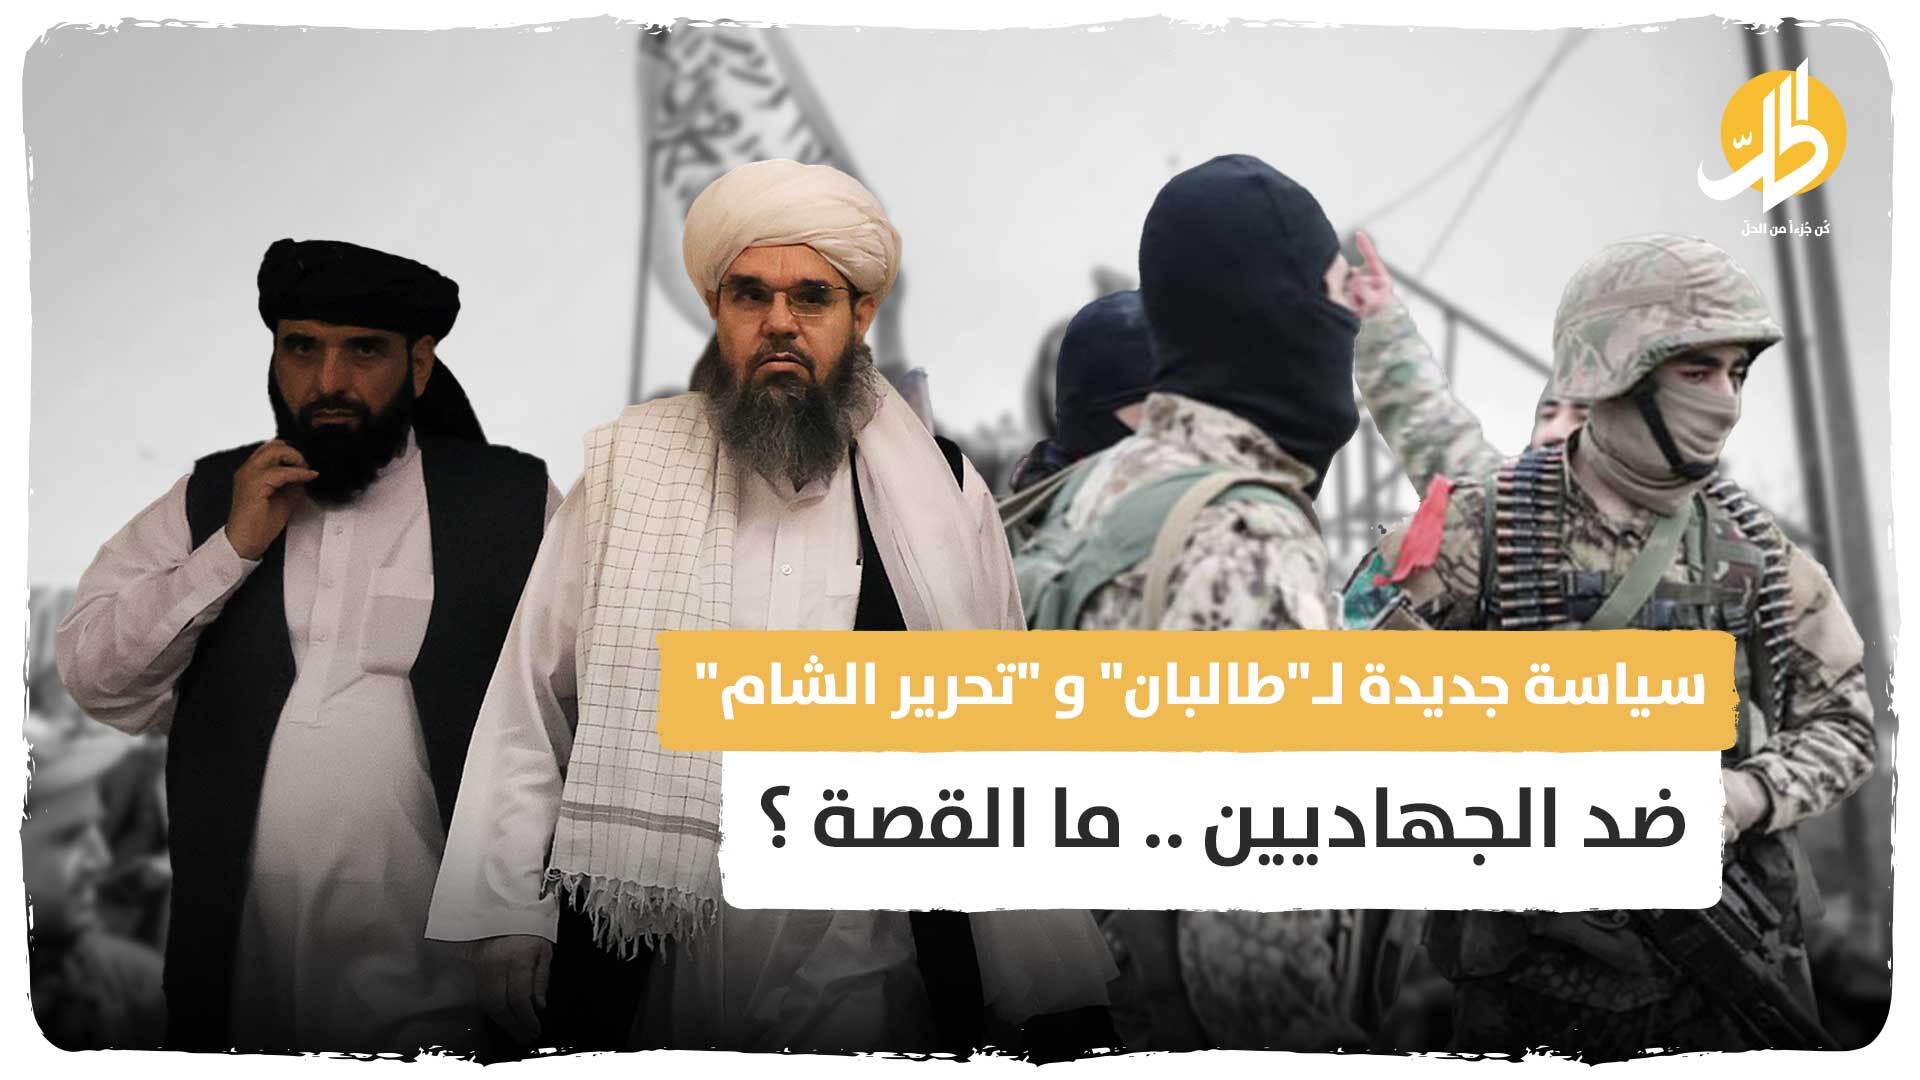 سياسة جديدة لـ”طالبان” و “تحرير الشام” ضد الجهاديين .. ما القصة ؟